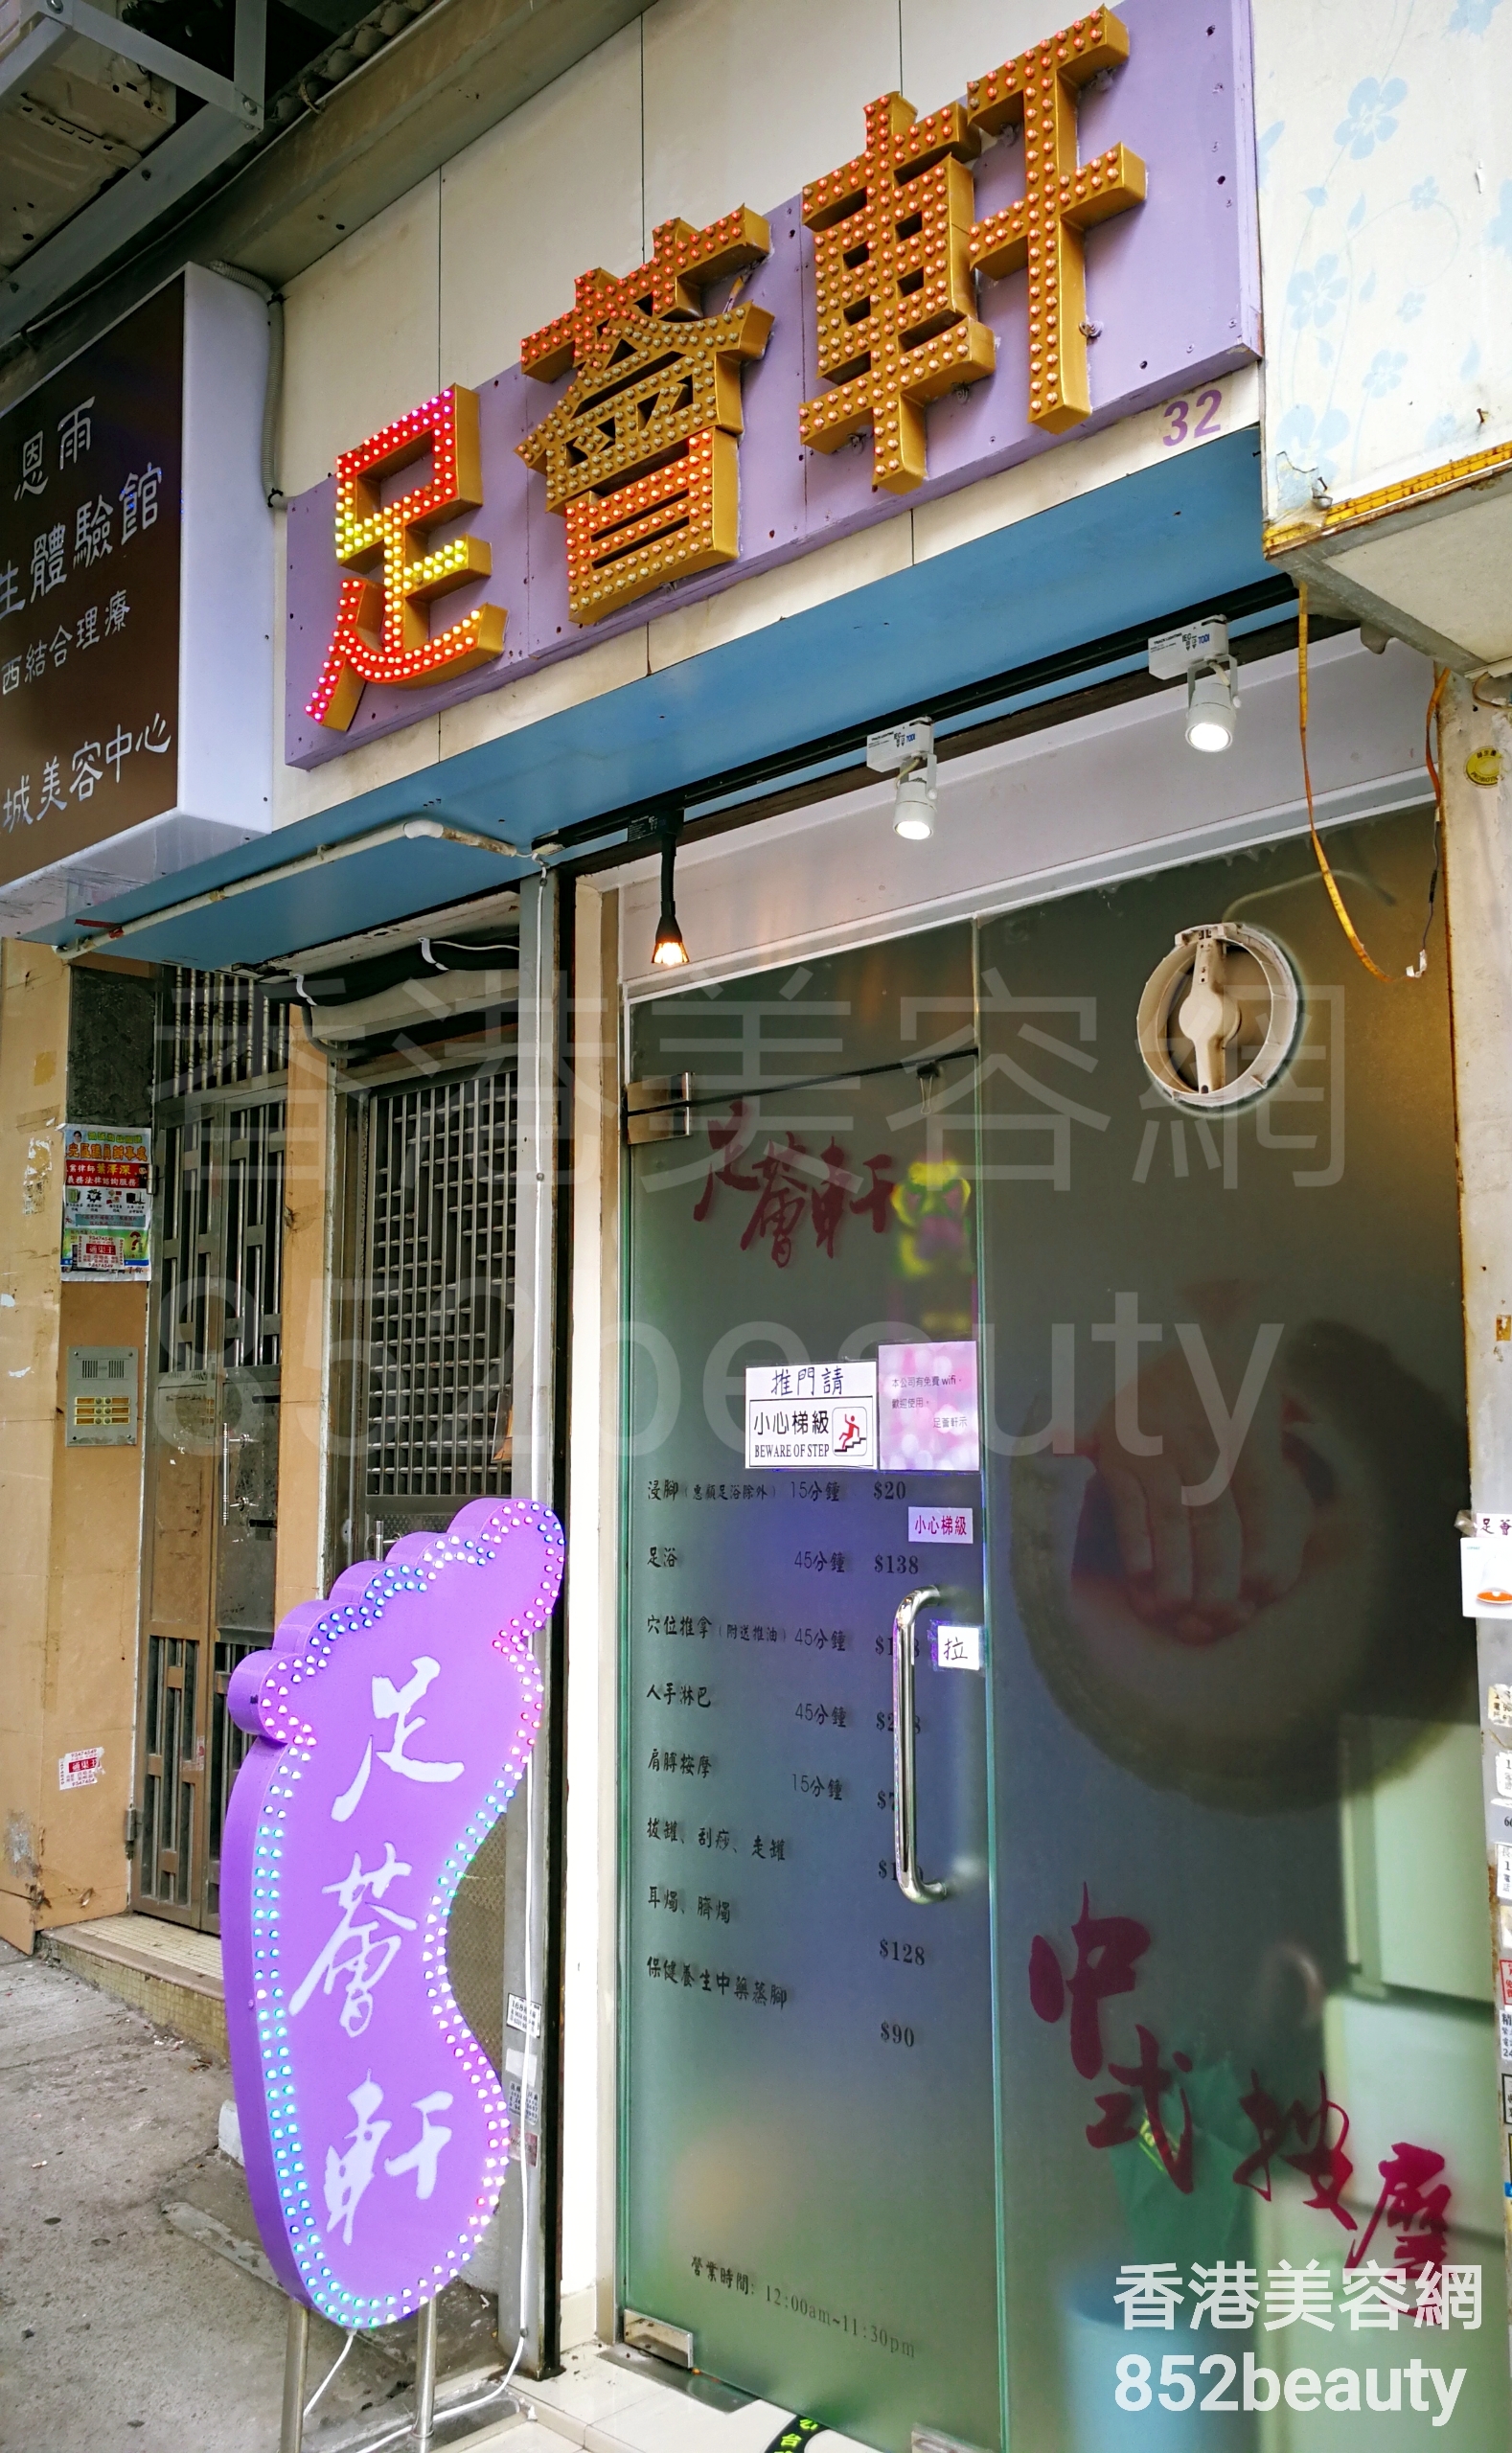 香港美容網 Hong Kong Beauty Salon 美容院 / 美容師: 足薈軒